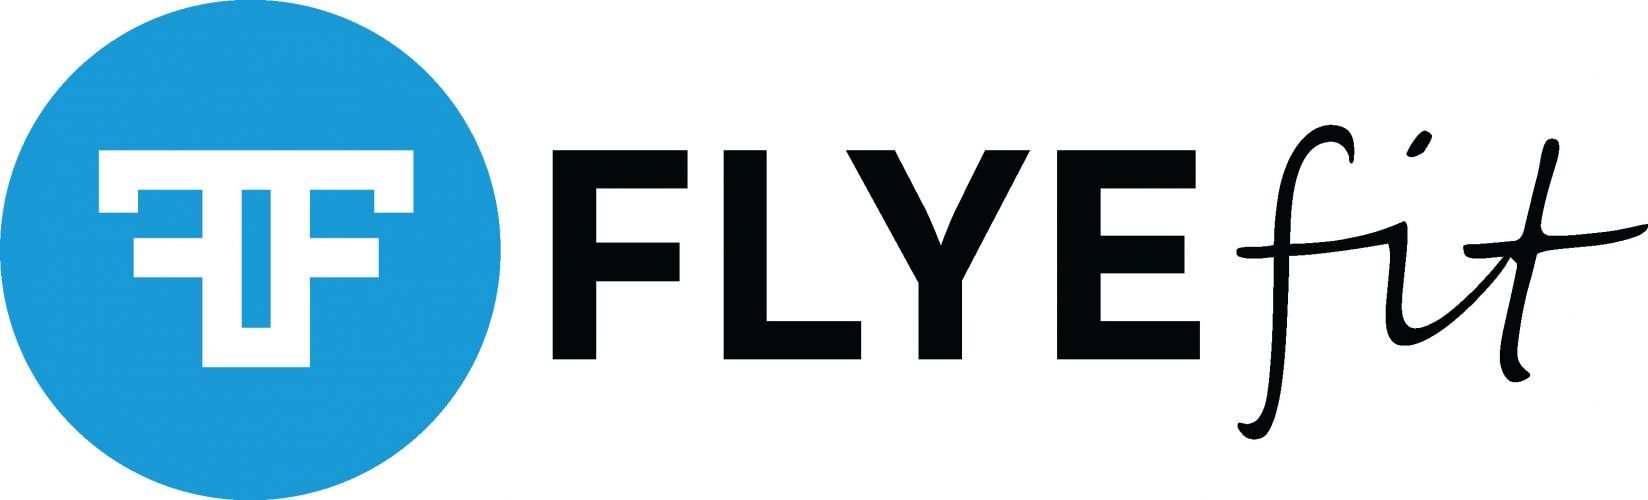 FlyeFit